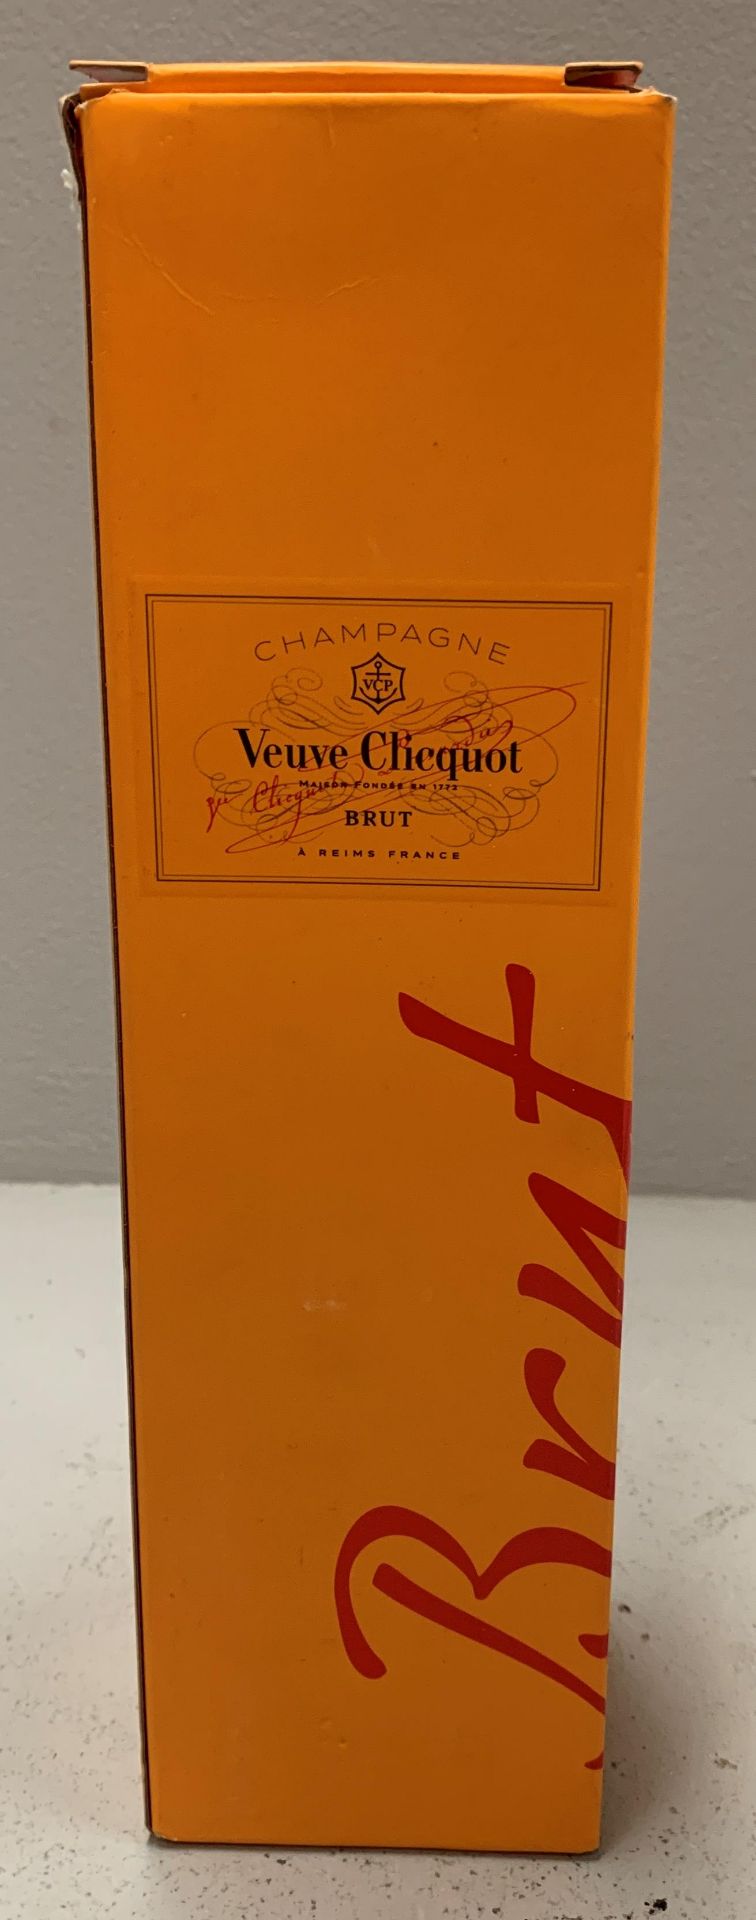 750ml bottle Veuve Clicquot champagne brut